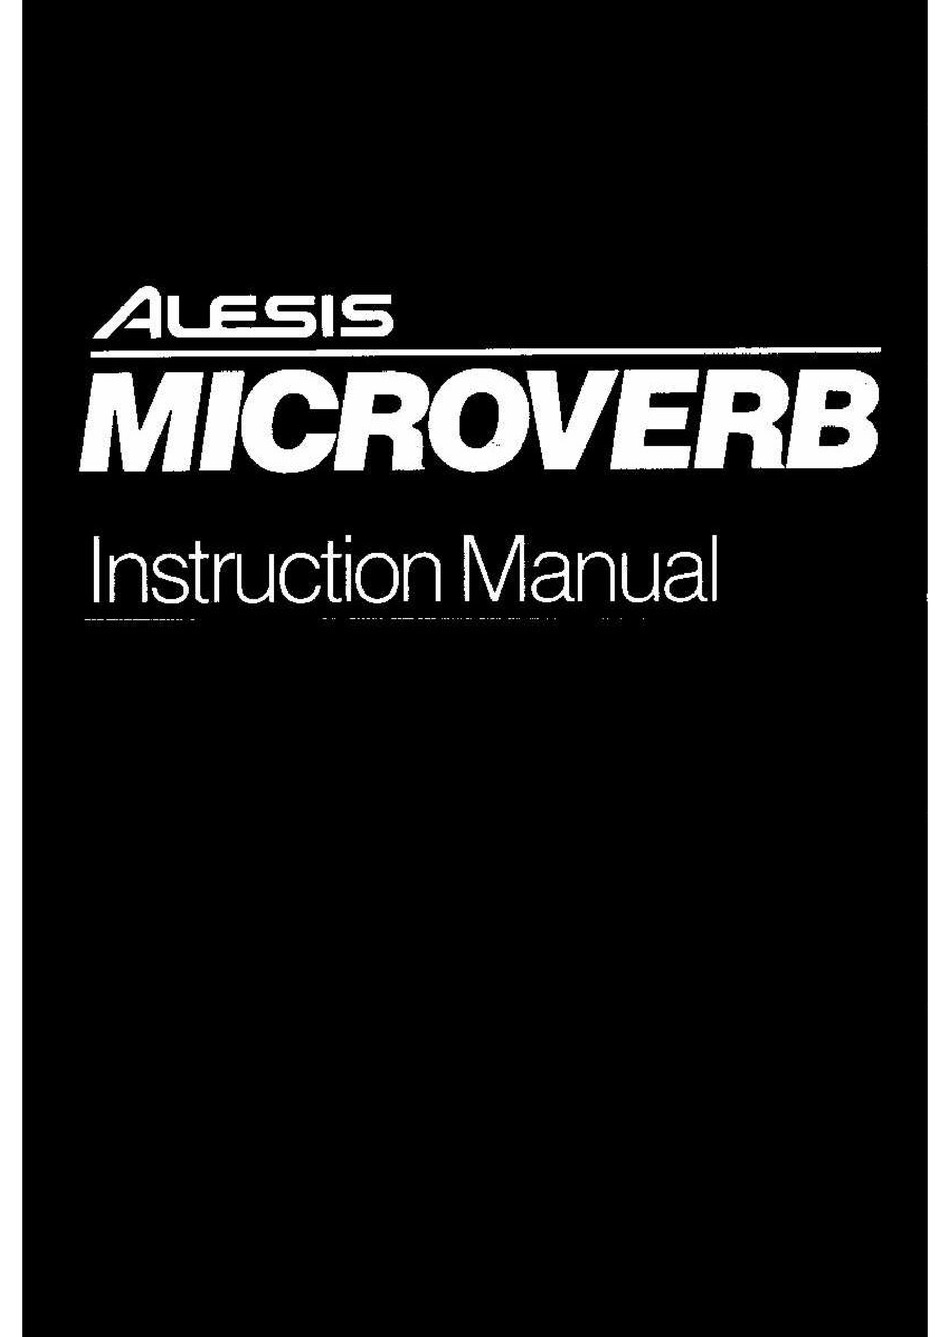 Alesis Microverb II Manual De Instrucciones 